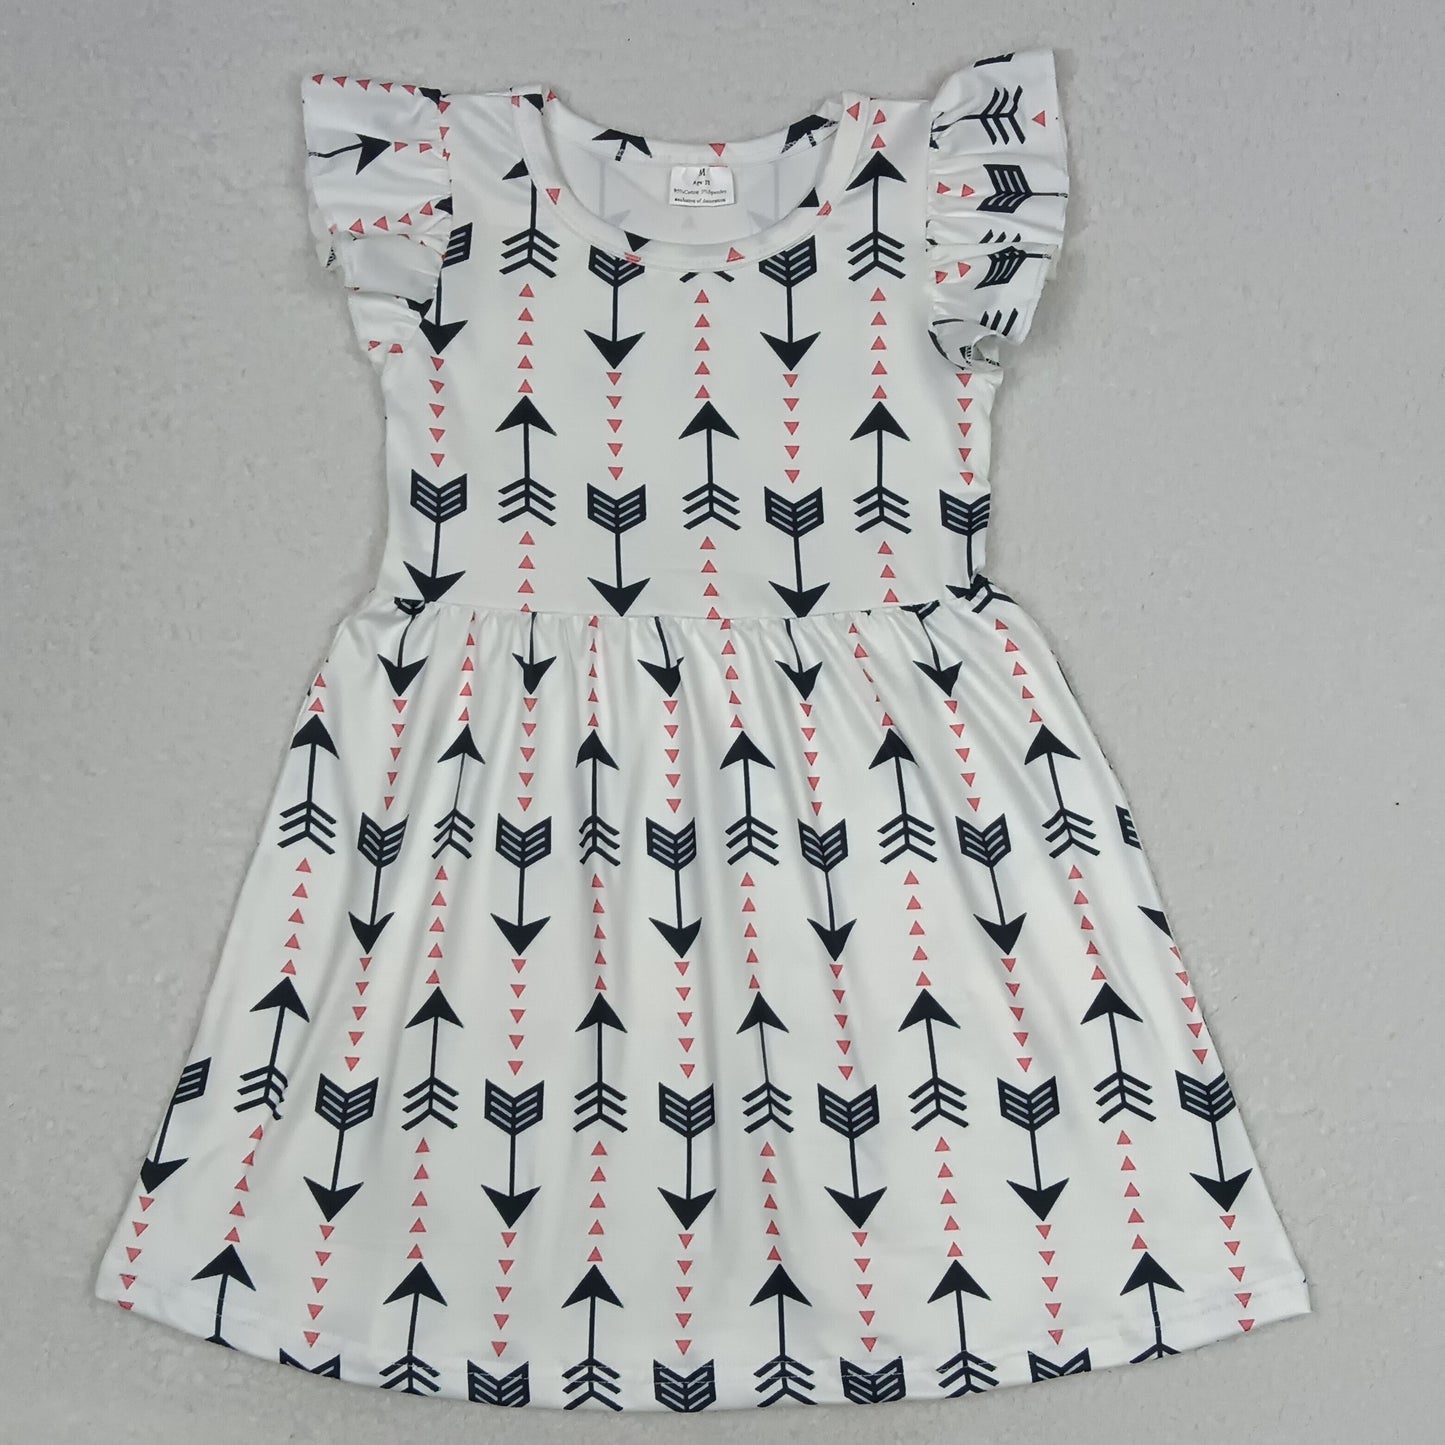 G4-5-9, \/'/ Arrow-shaped white flying sleeve skirt